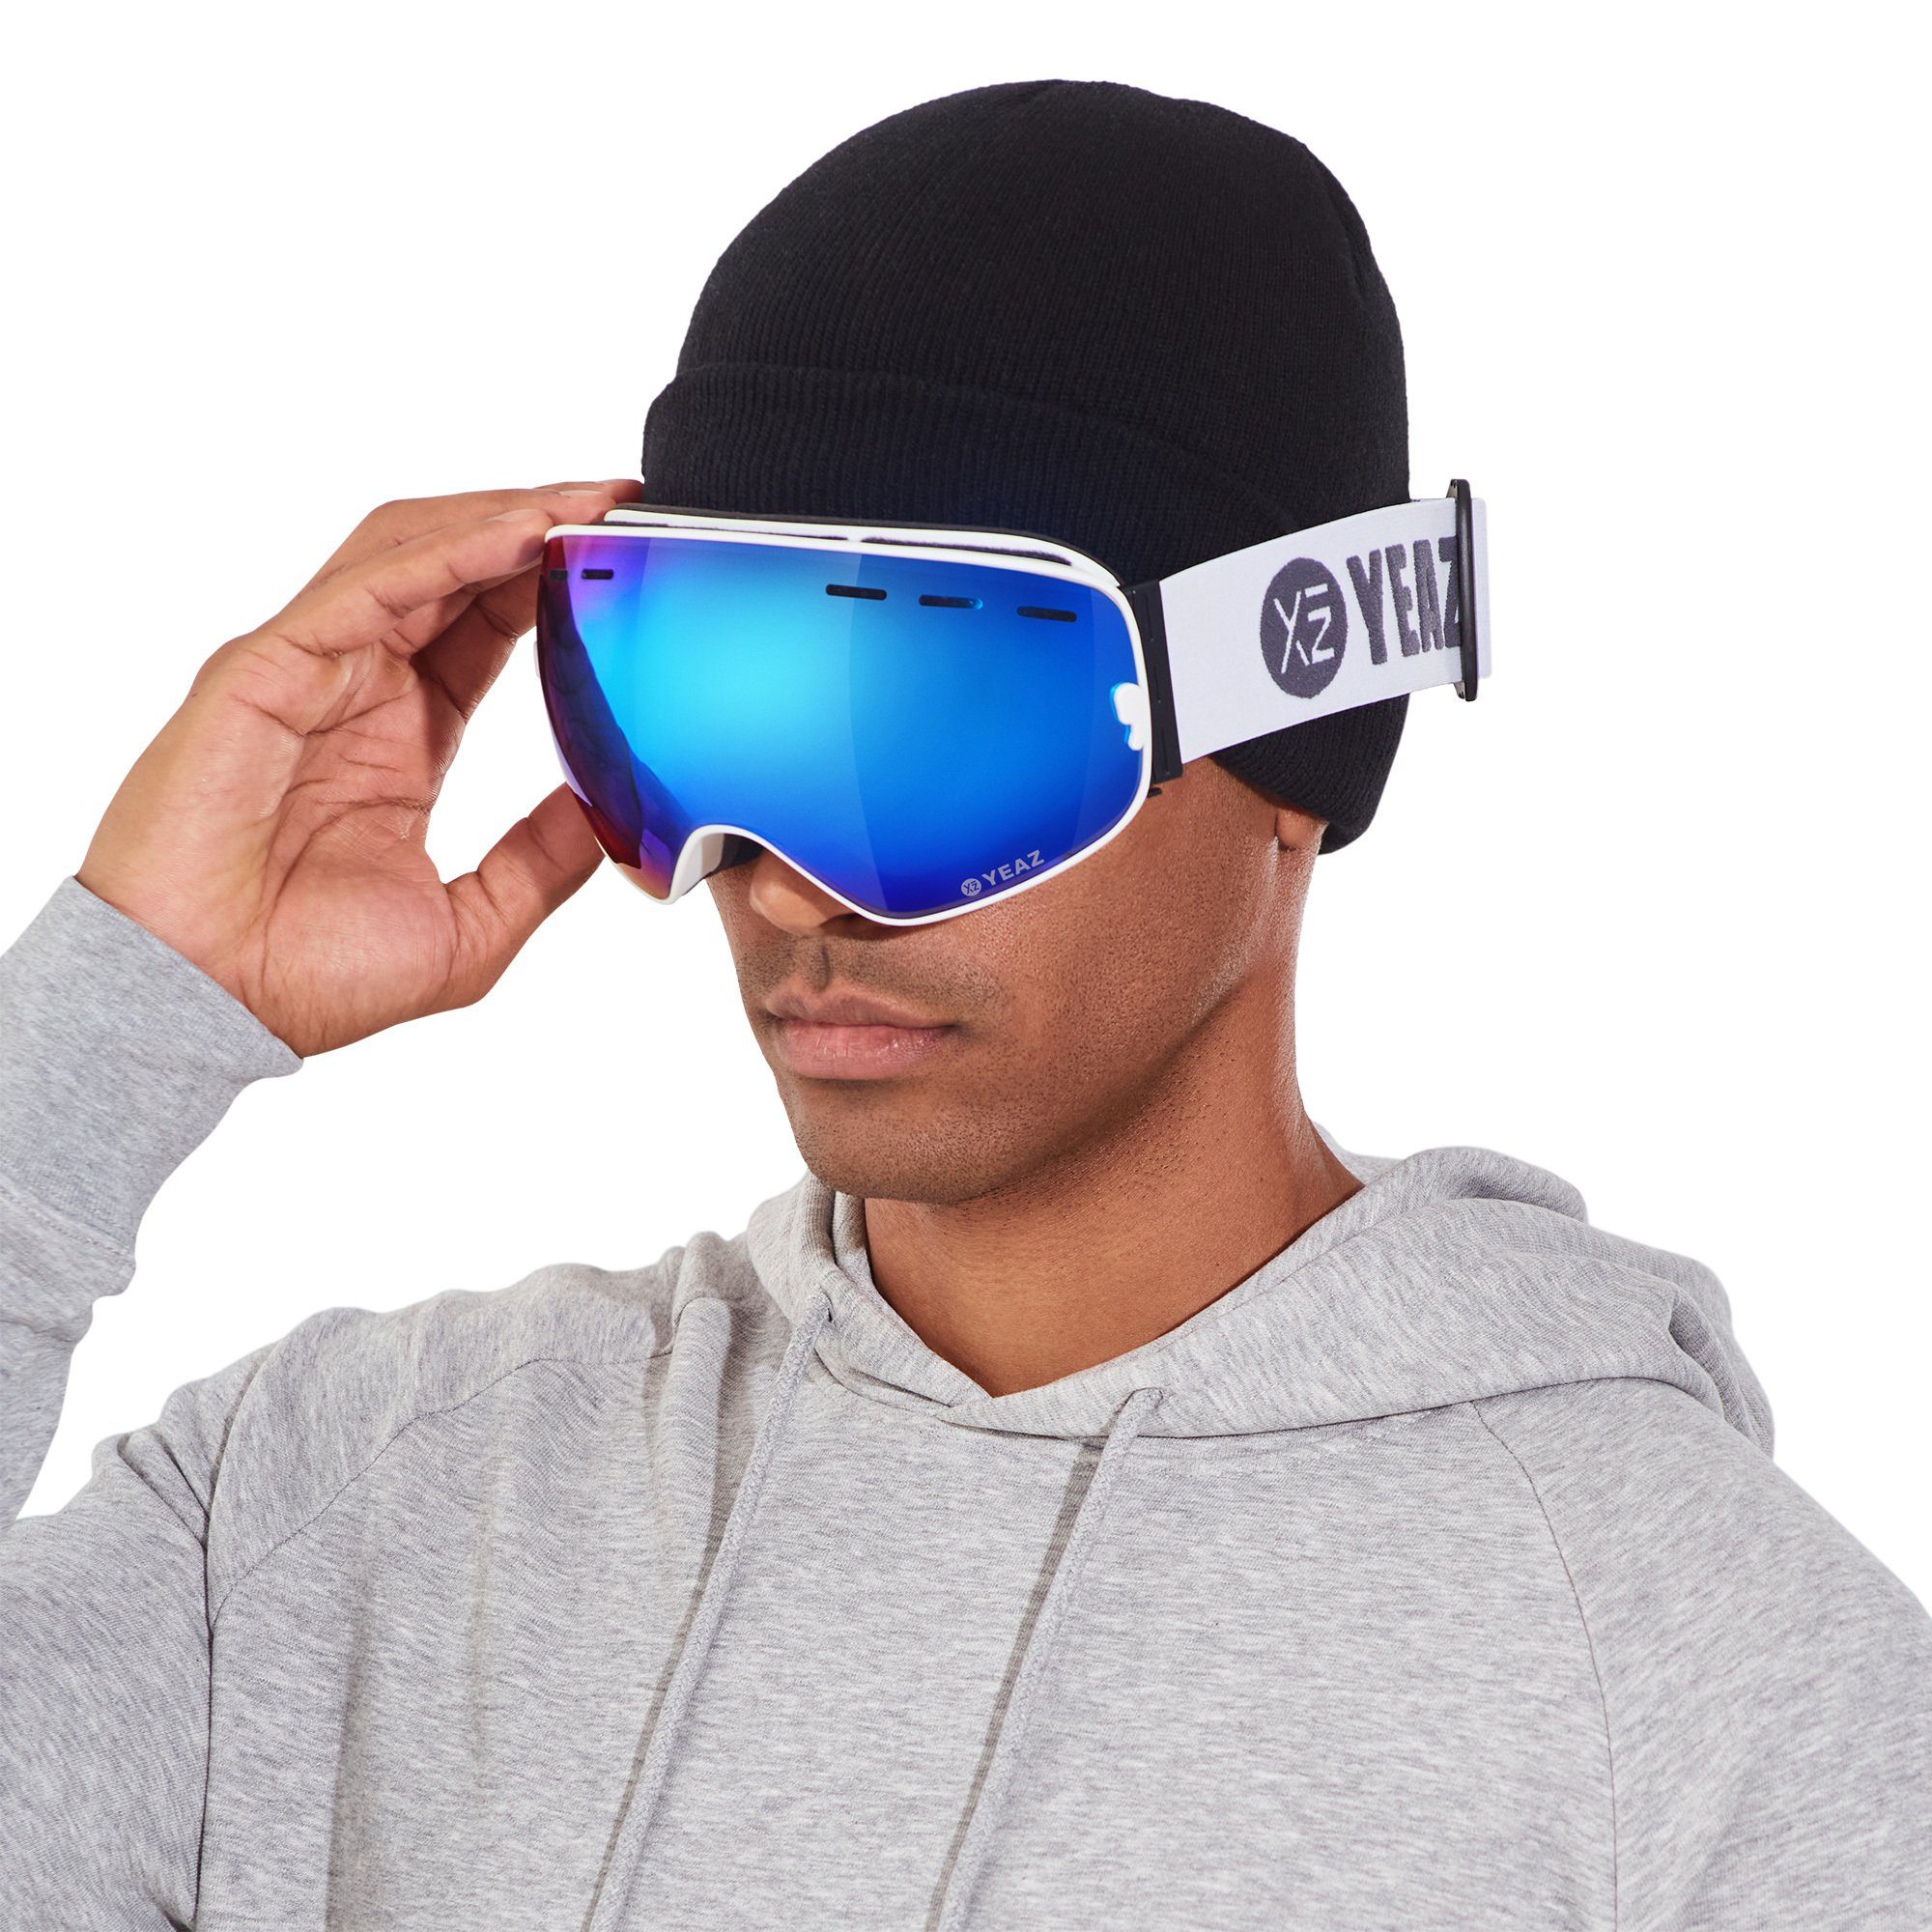 YEAZ Skibrille XTRM-SUMMIT ski- snowboardbrille verspiegelt, Premium-Ski- und Snowboardbrille für Erwachsene und Jugendliche